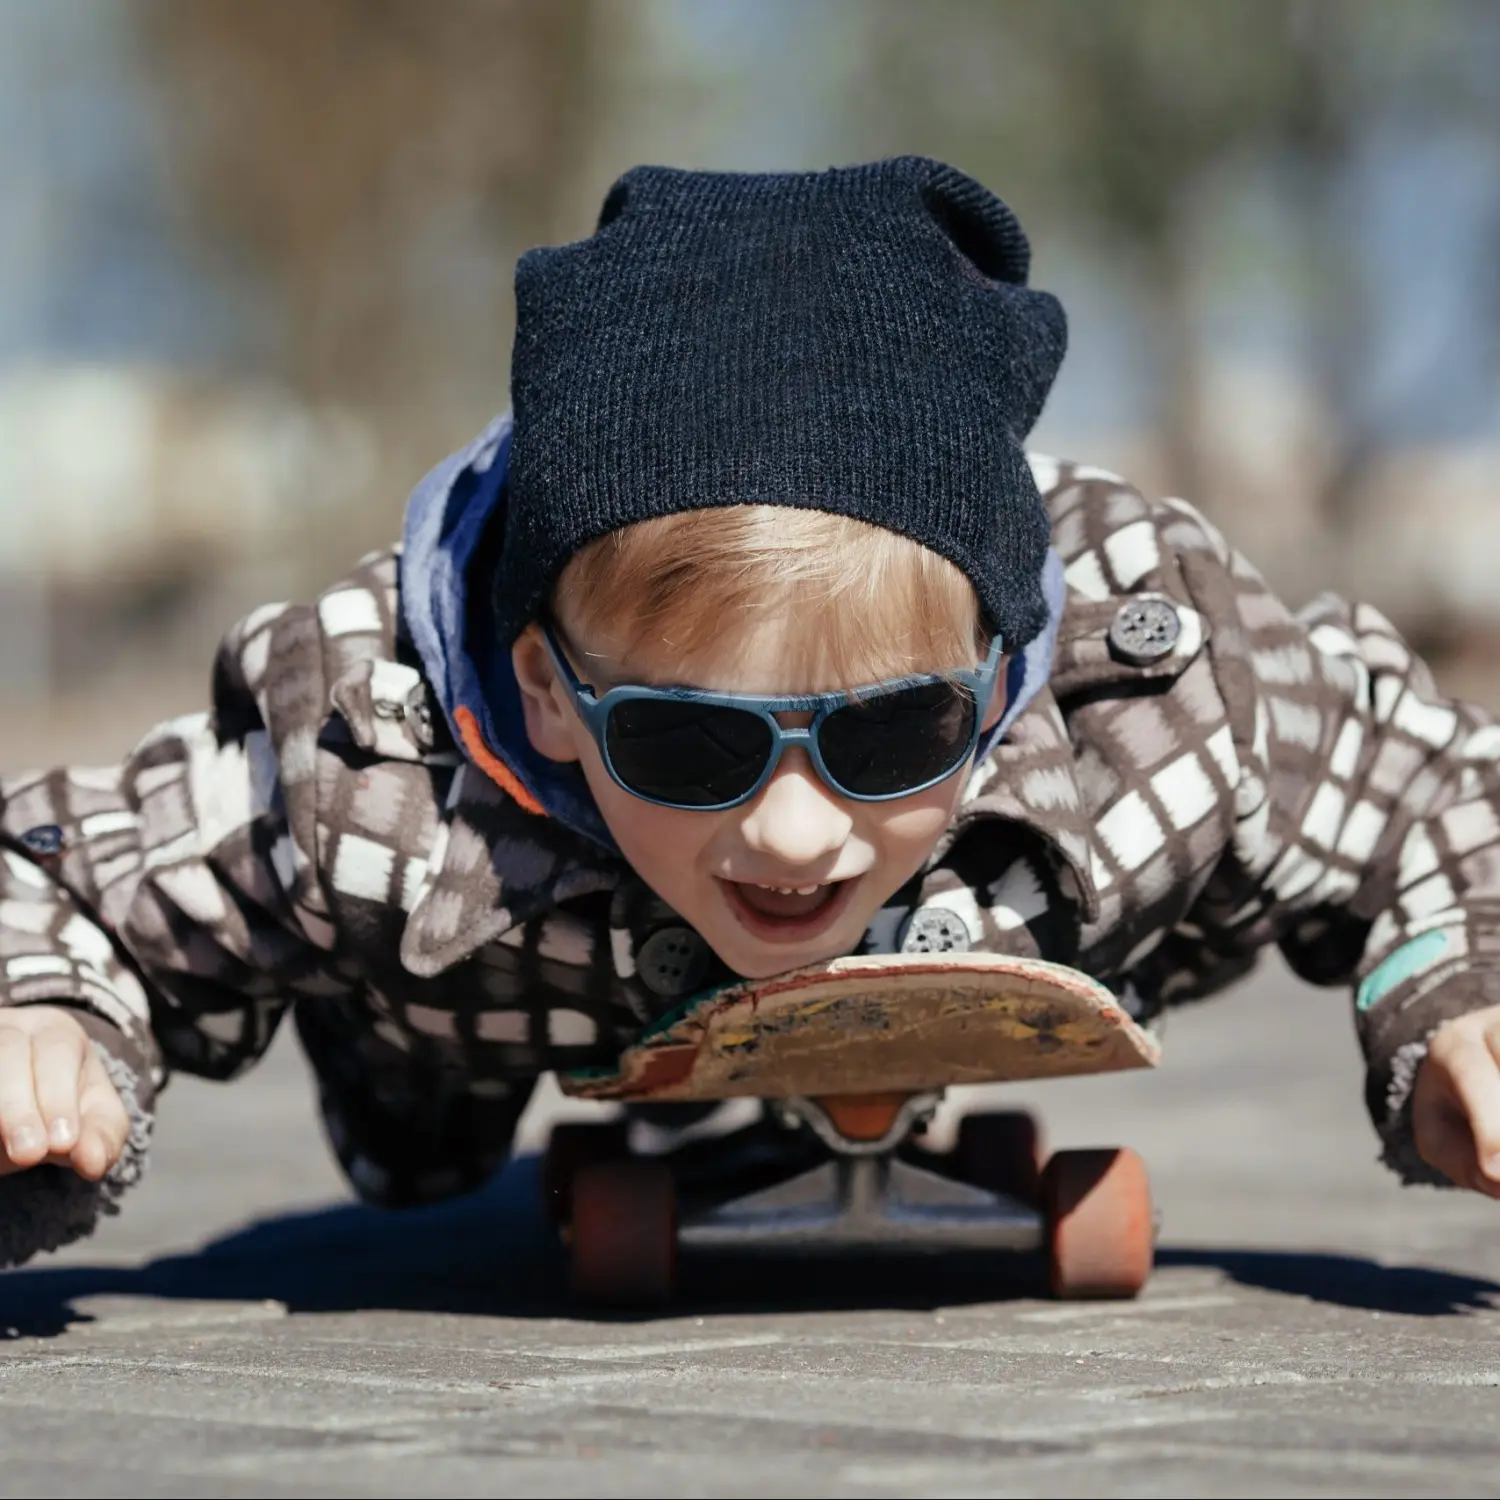 kleiner Junge auf Skateboard